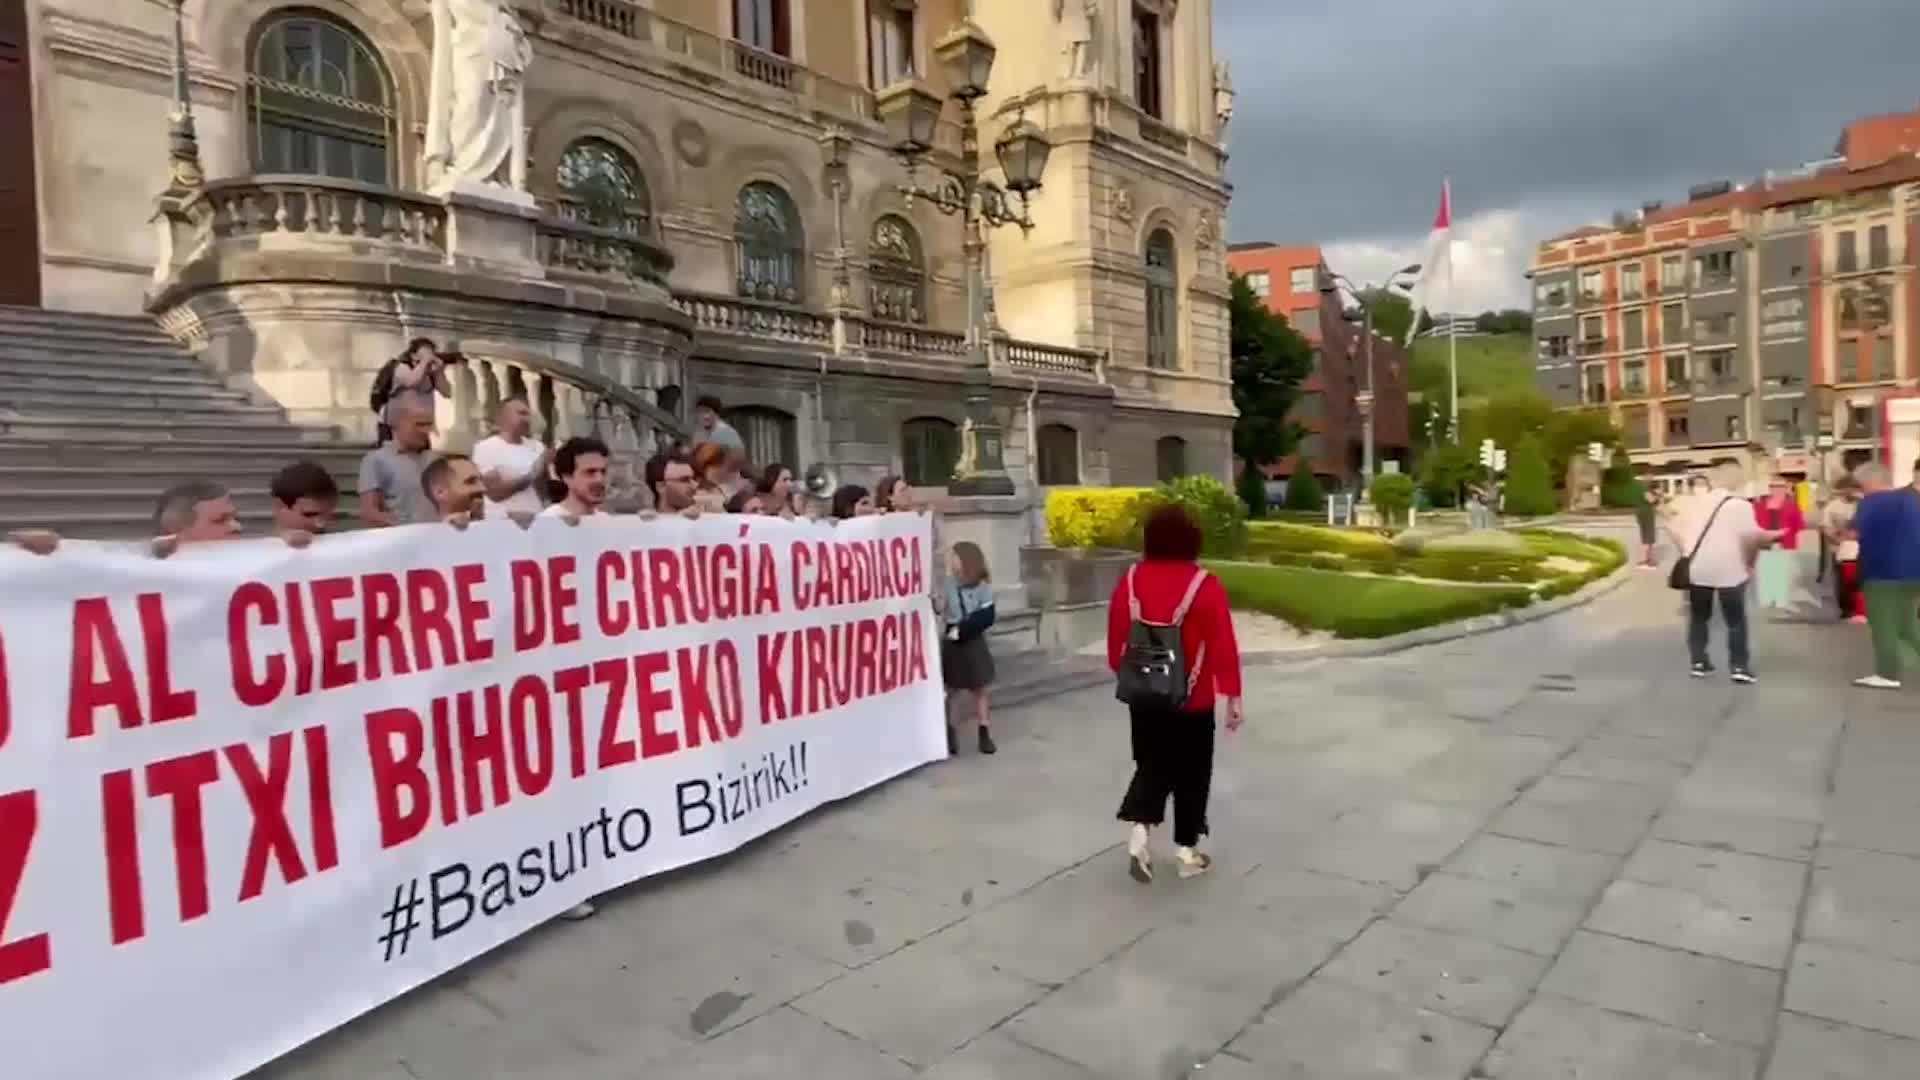 Sindikatuek manifestaziora joko dute ostiralean Basurtuko ospitalean Bihotzeko Kirurgiaren itxieraren aurka